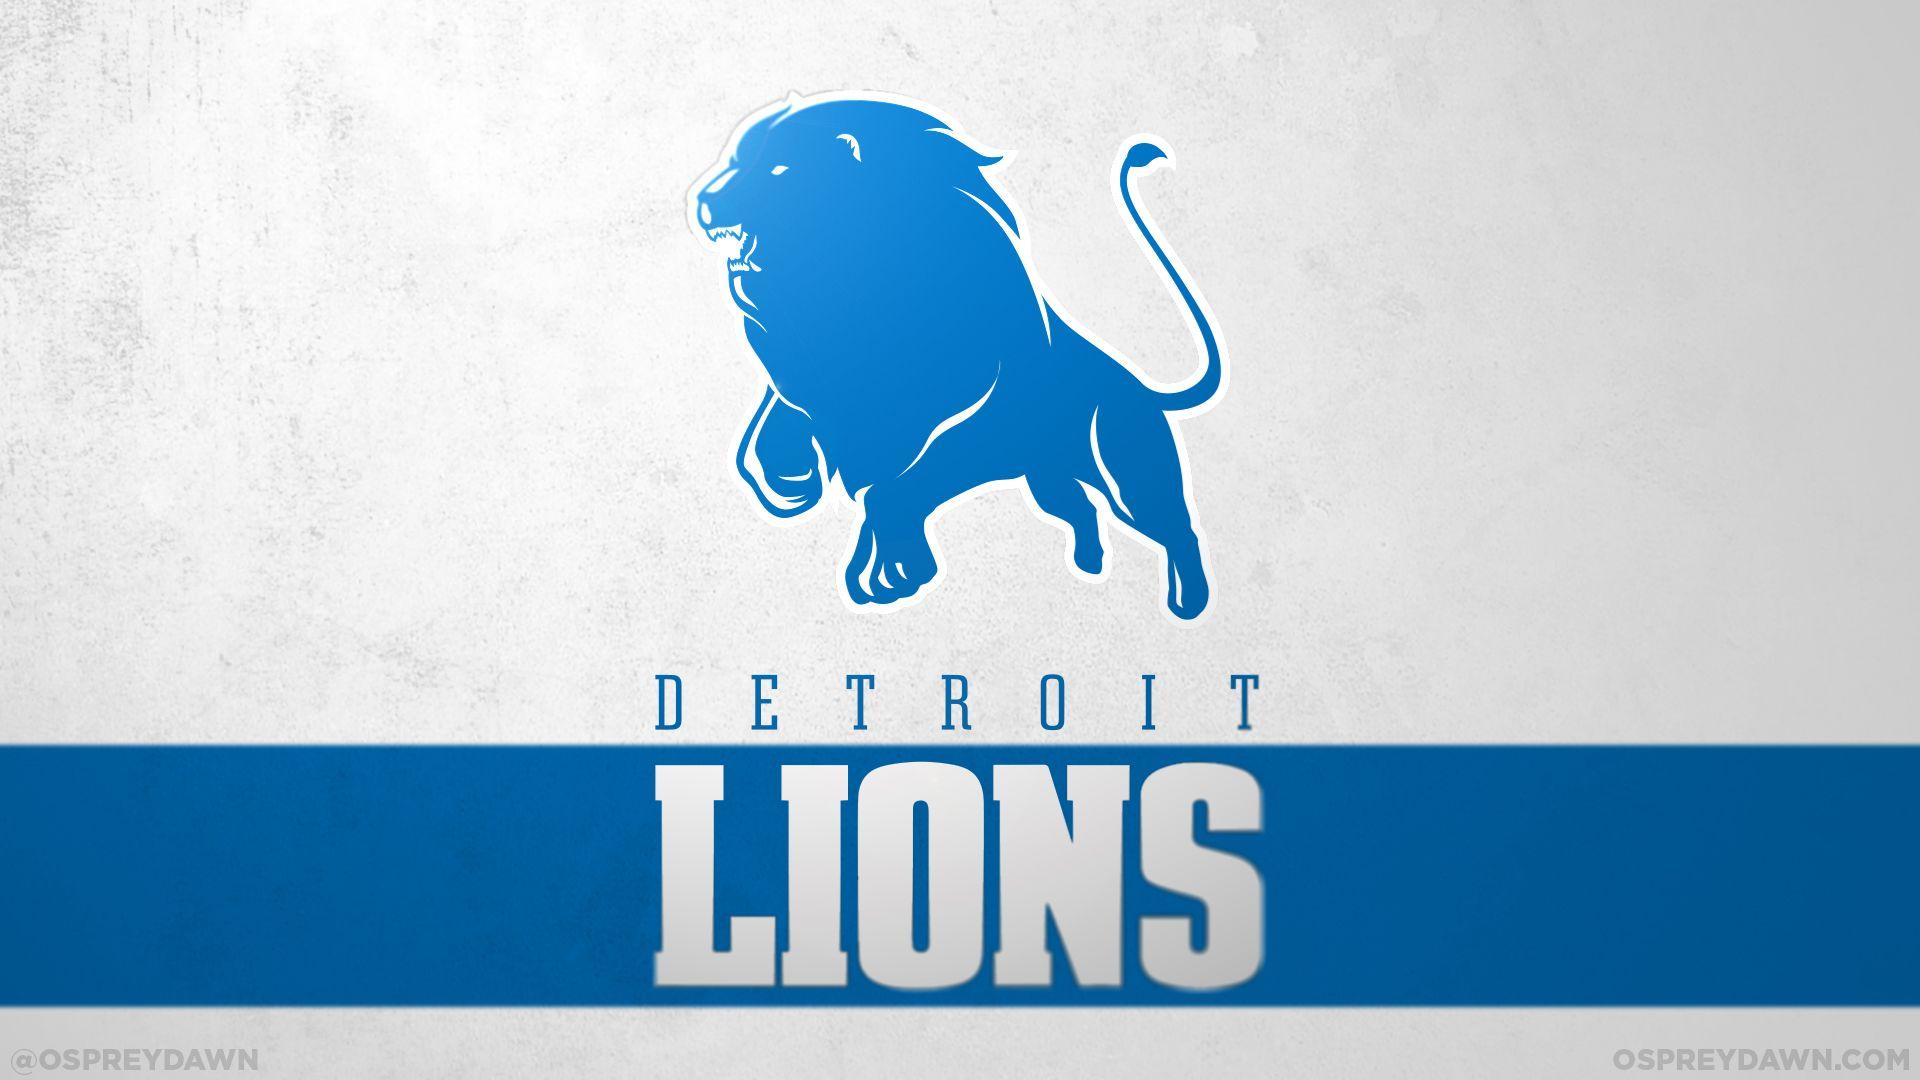 Detroit Lions New Logo - Detroit lions new Logos